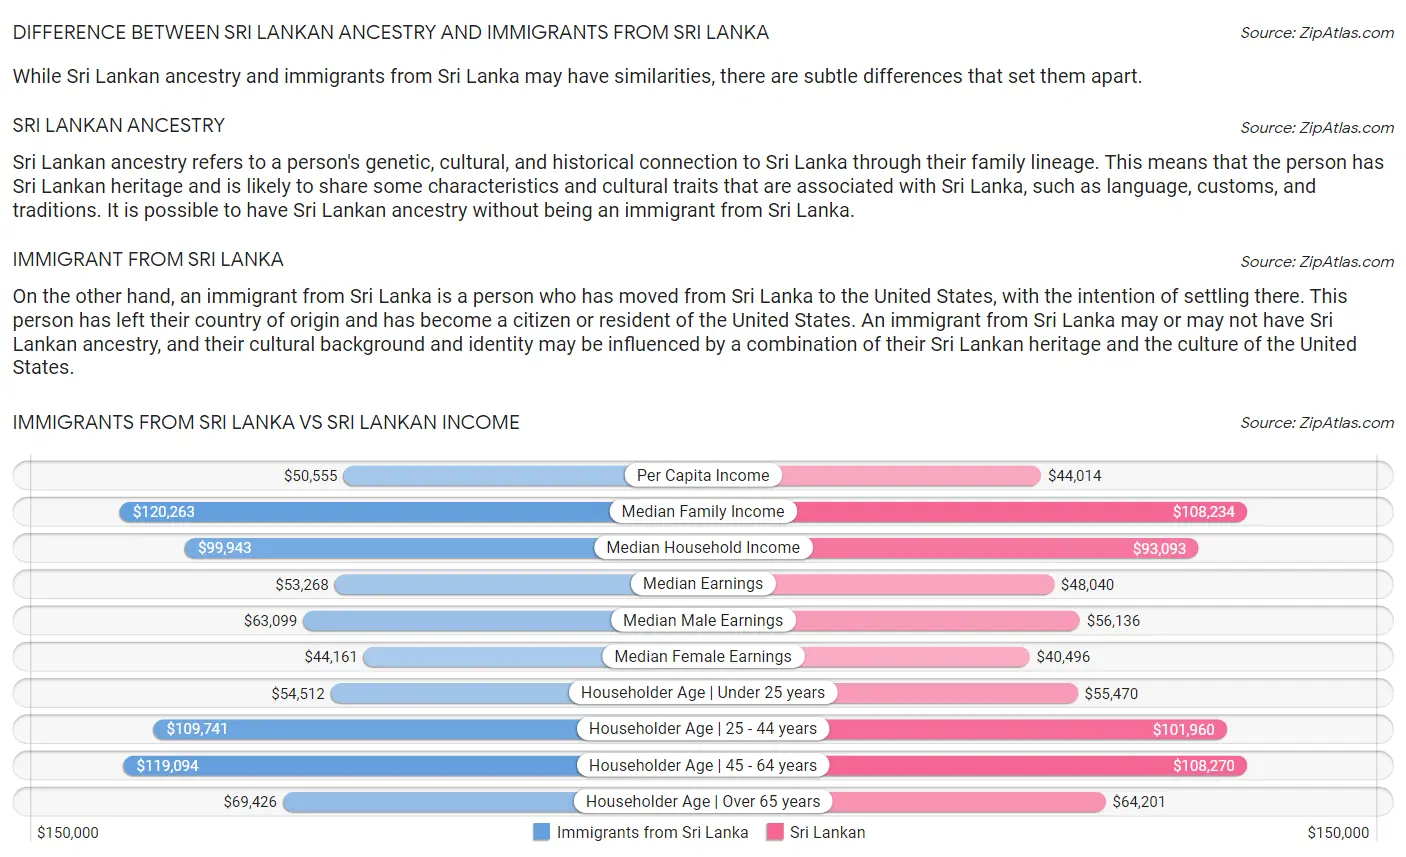 Immigrants from Sri Lanka vs Sri Lankan Income